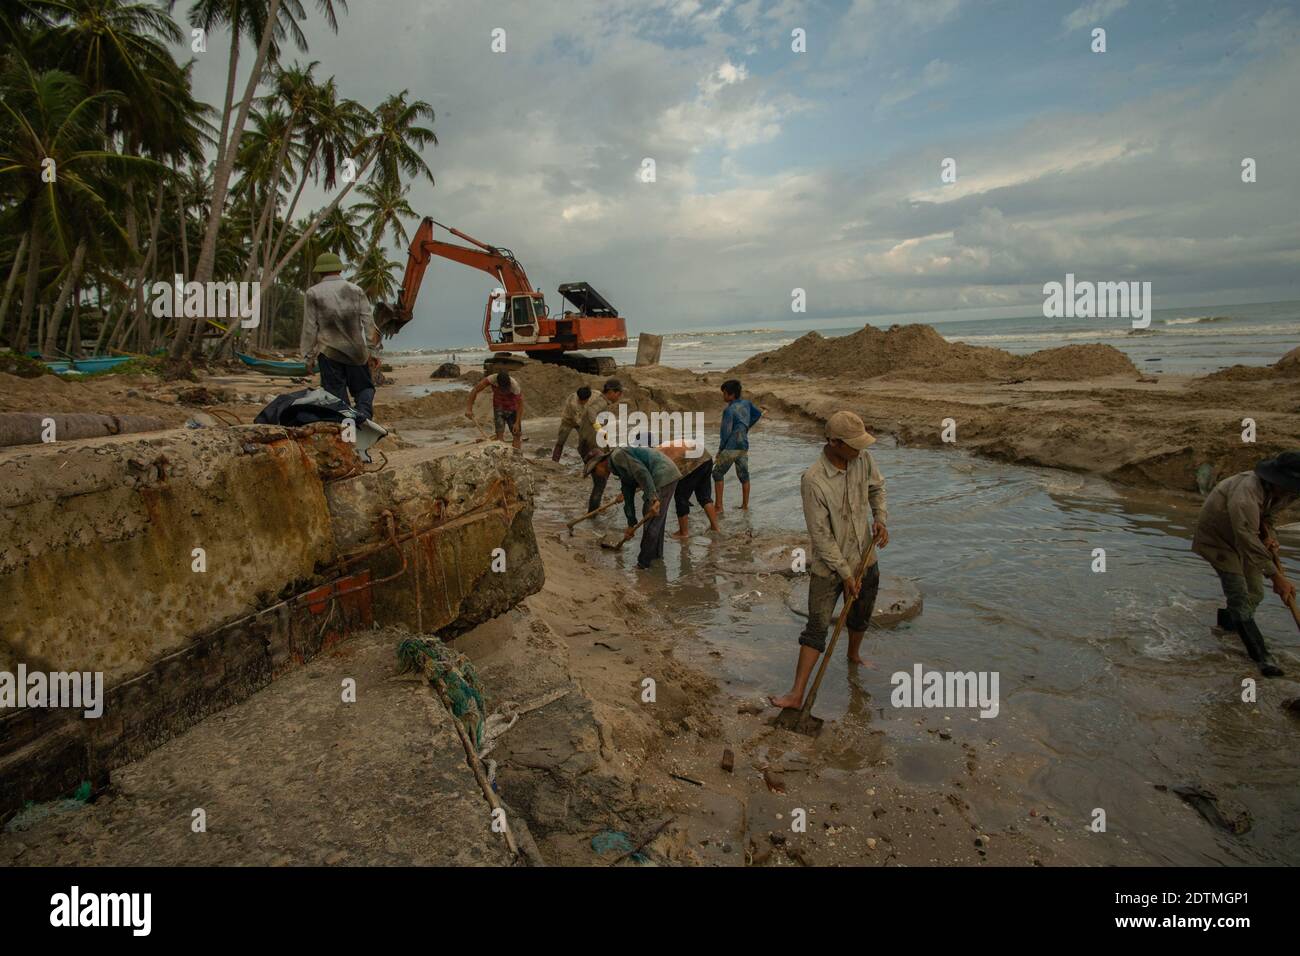 4 juillet 2019 Muine, Vietnam. Restauration de la plage. Les travailleurs vietnamiens restaurent une plage après la tempête en raison de changements spectaculaires dans l'environnement. Banque D'Images